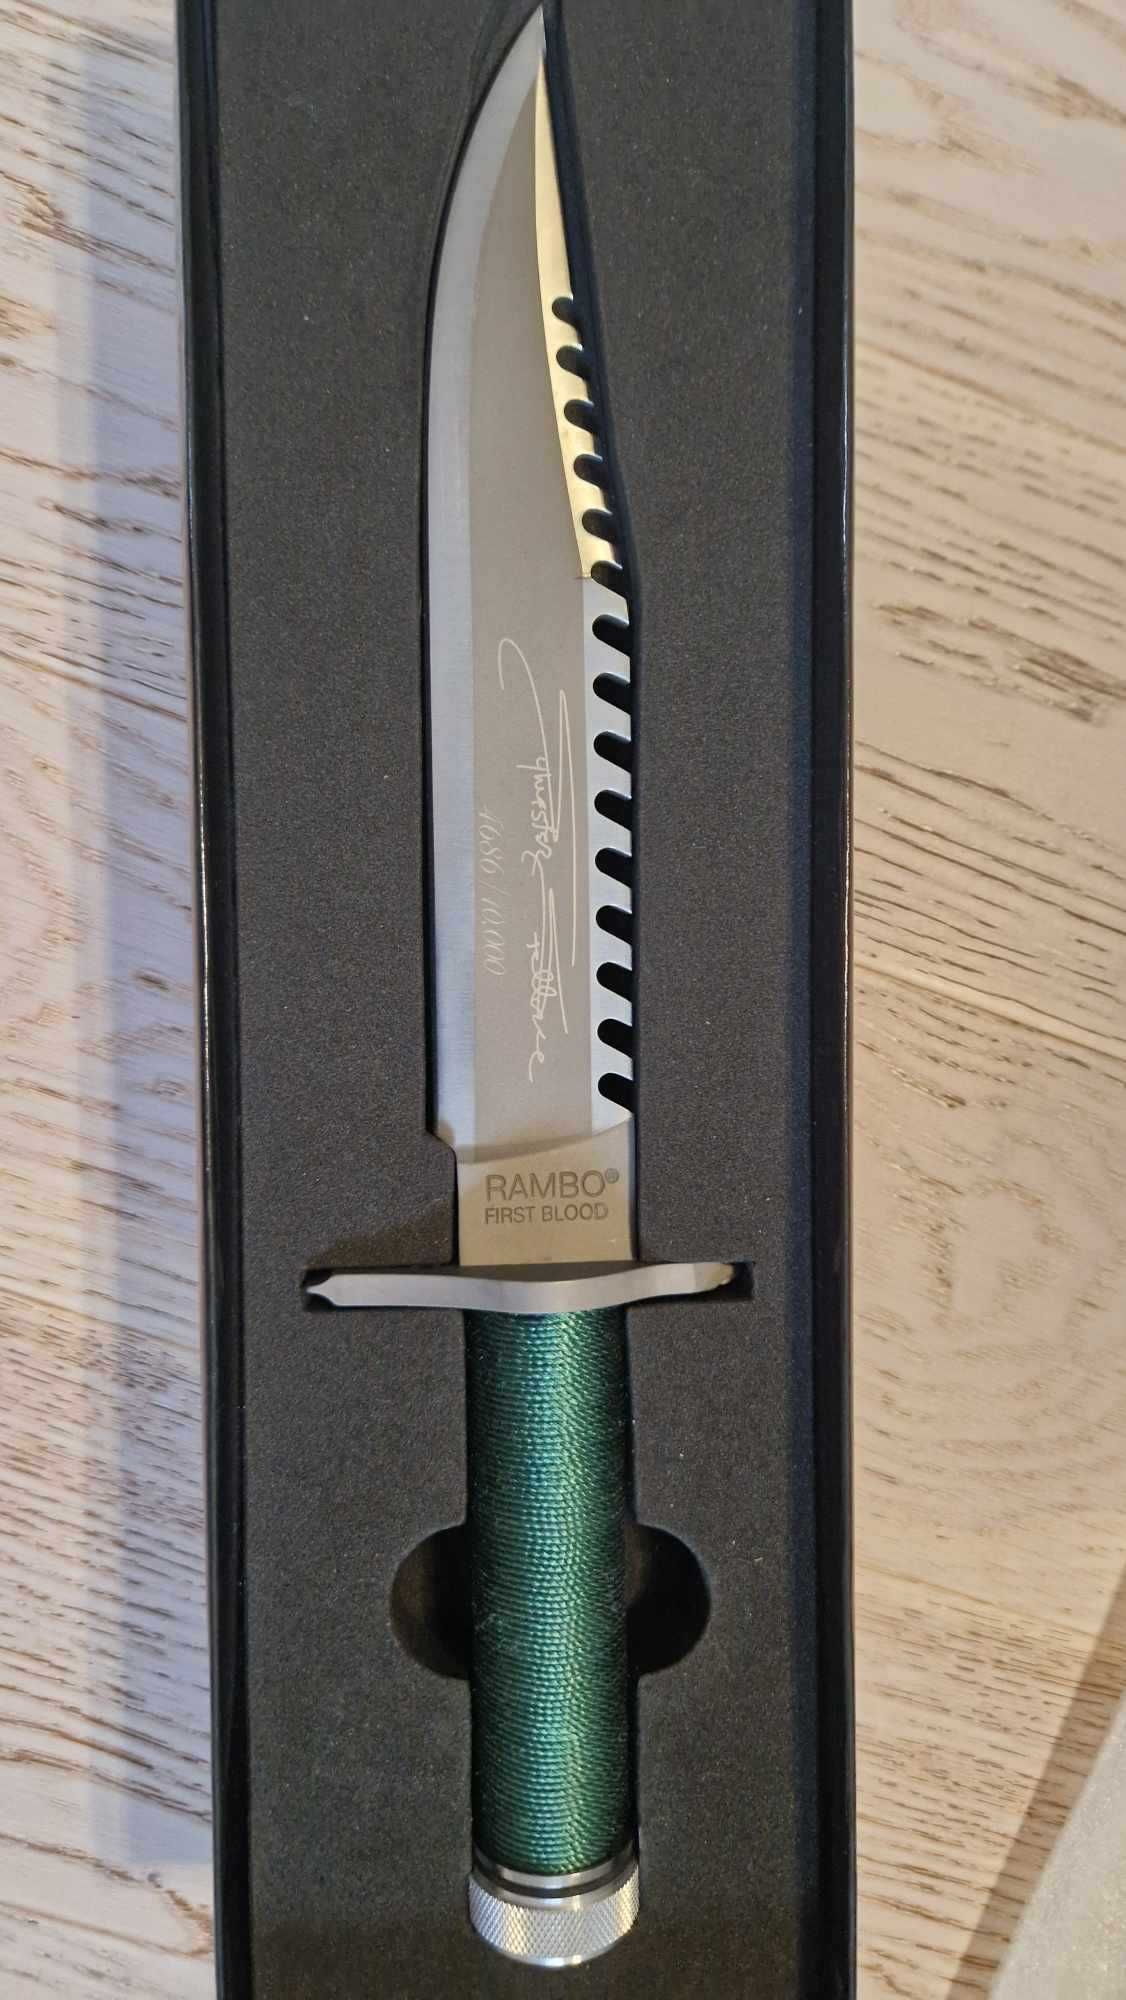 Nóż Rambo z grawerunkiem podpisu Sylvestra Stallone, limitowana edycja